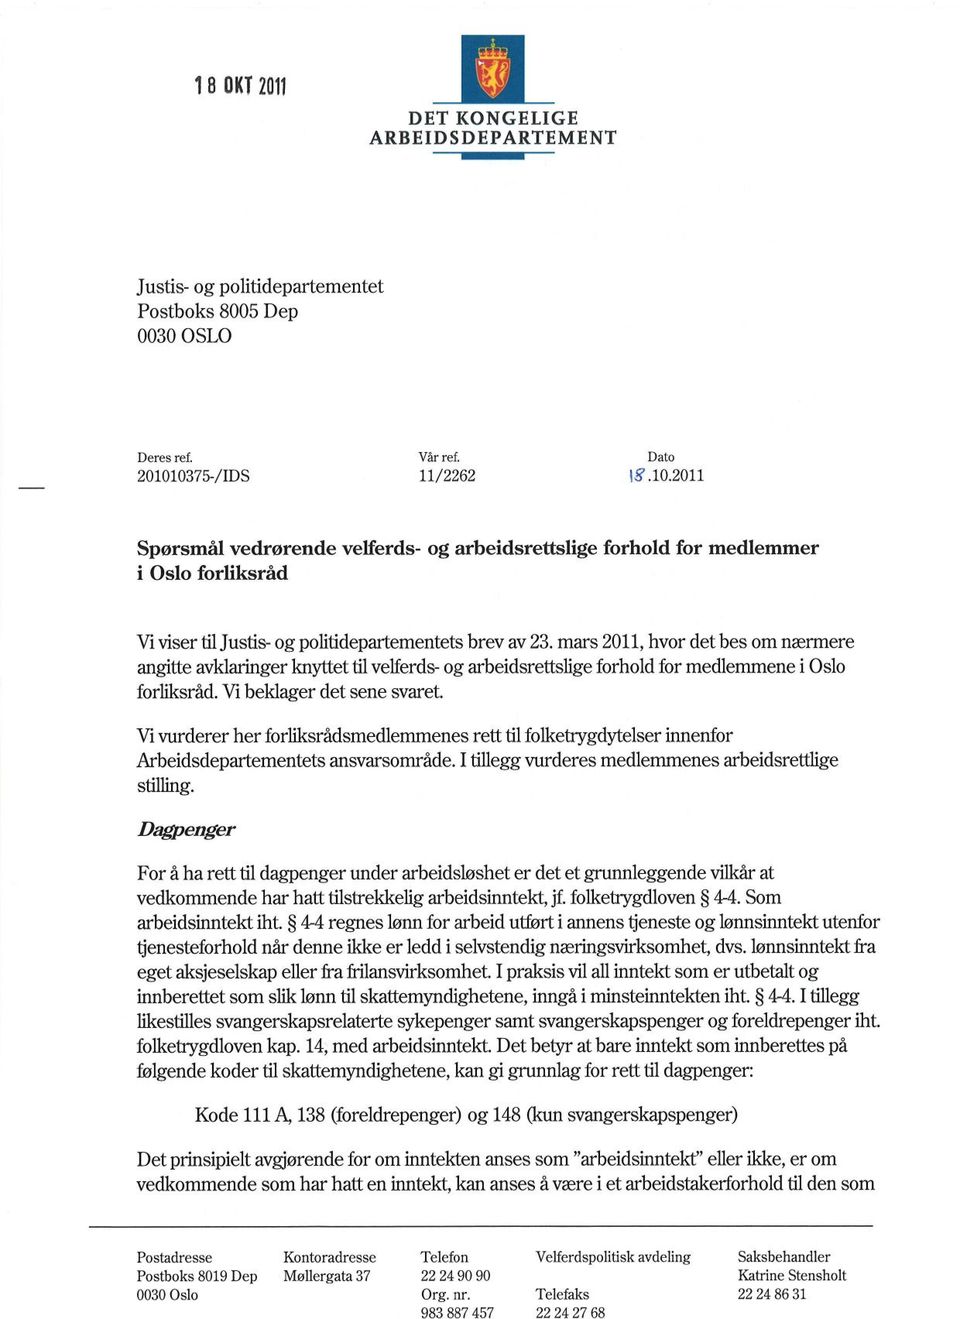 mars 2011, hvor det bes om nærmere angitte avklaringer knyttet til velferds- og arbeidsrettslige forhold for medlemmene i Oslo forliksråd.